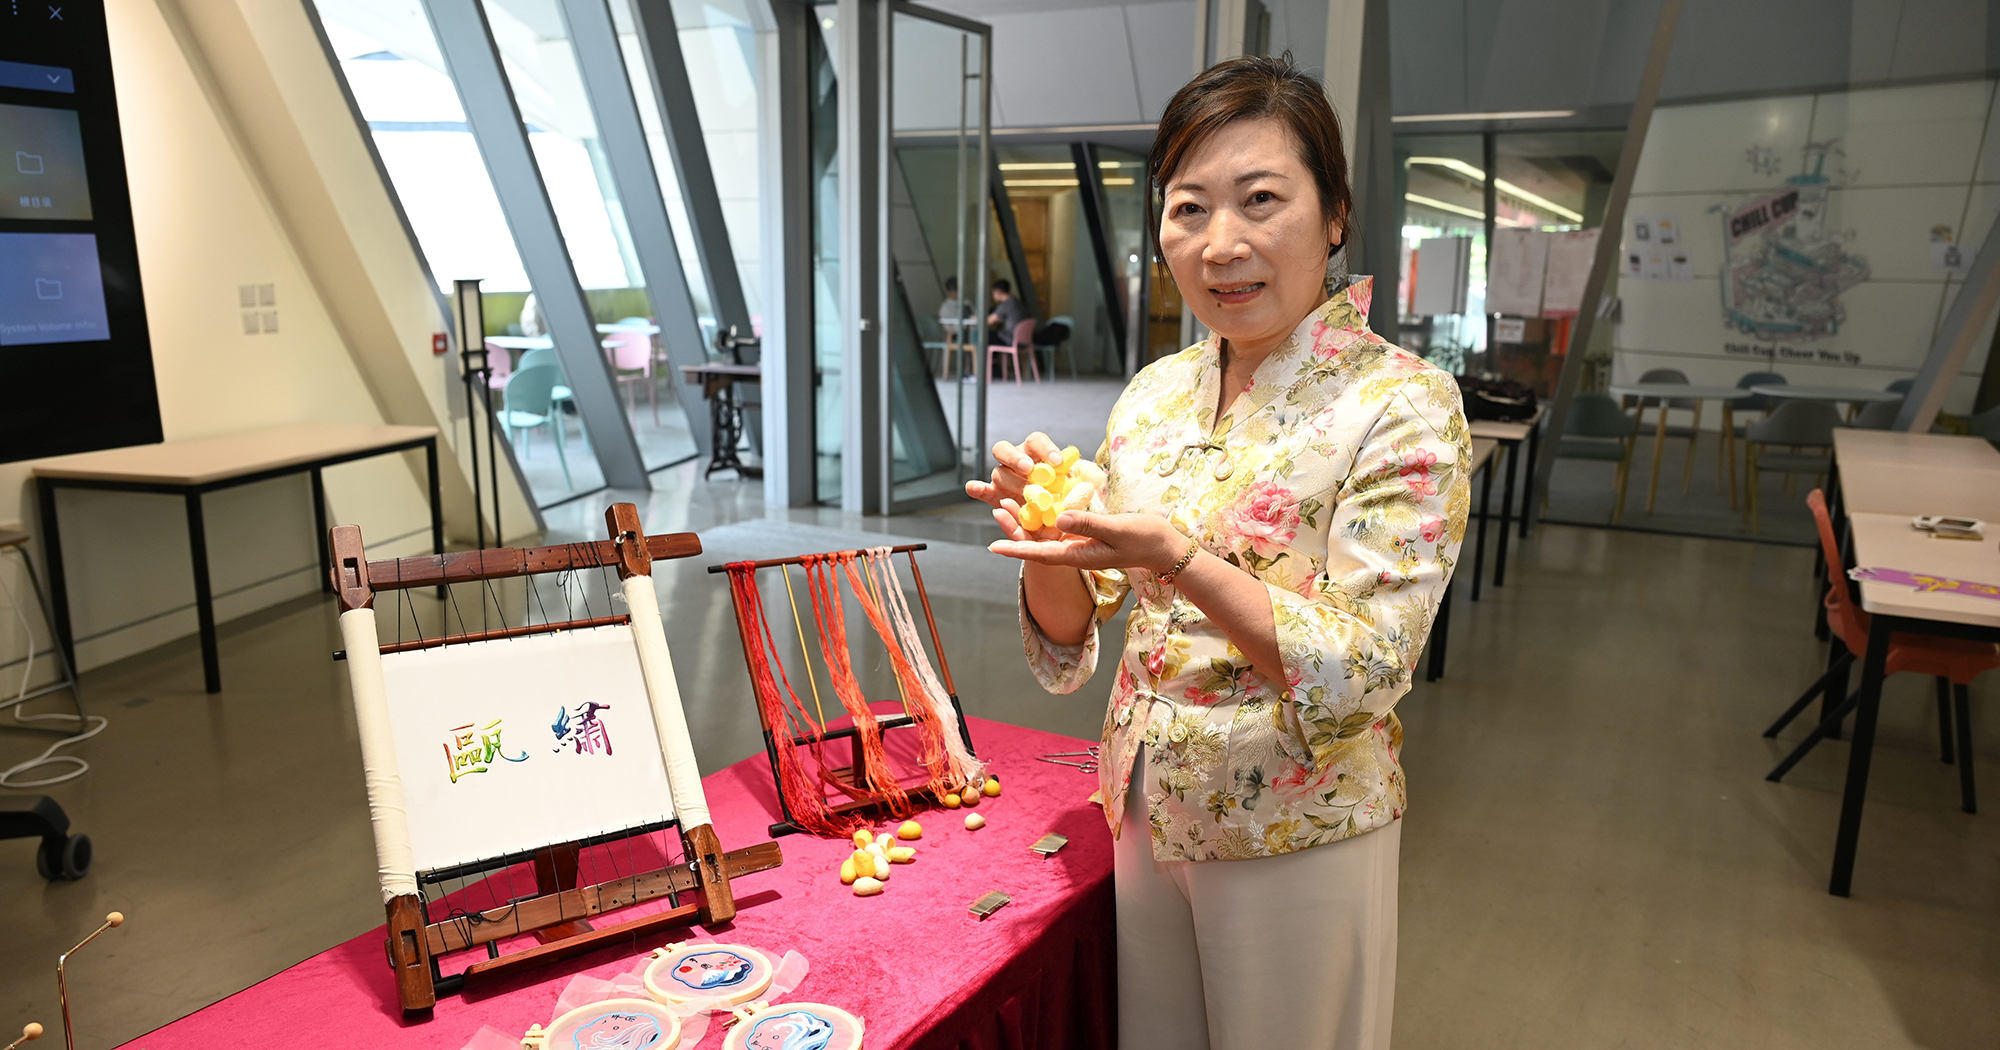 是次展览举办多场中华传统刺绣技艺工作坊，让参加者细味传统刺绣工艺文化的魅力，体验工艺背后追求的卓越工匠精神。